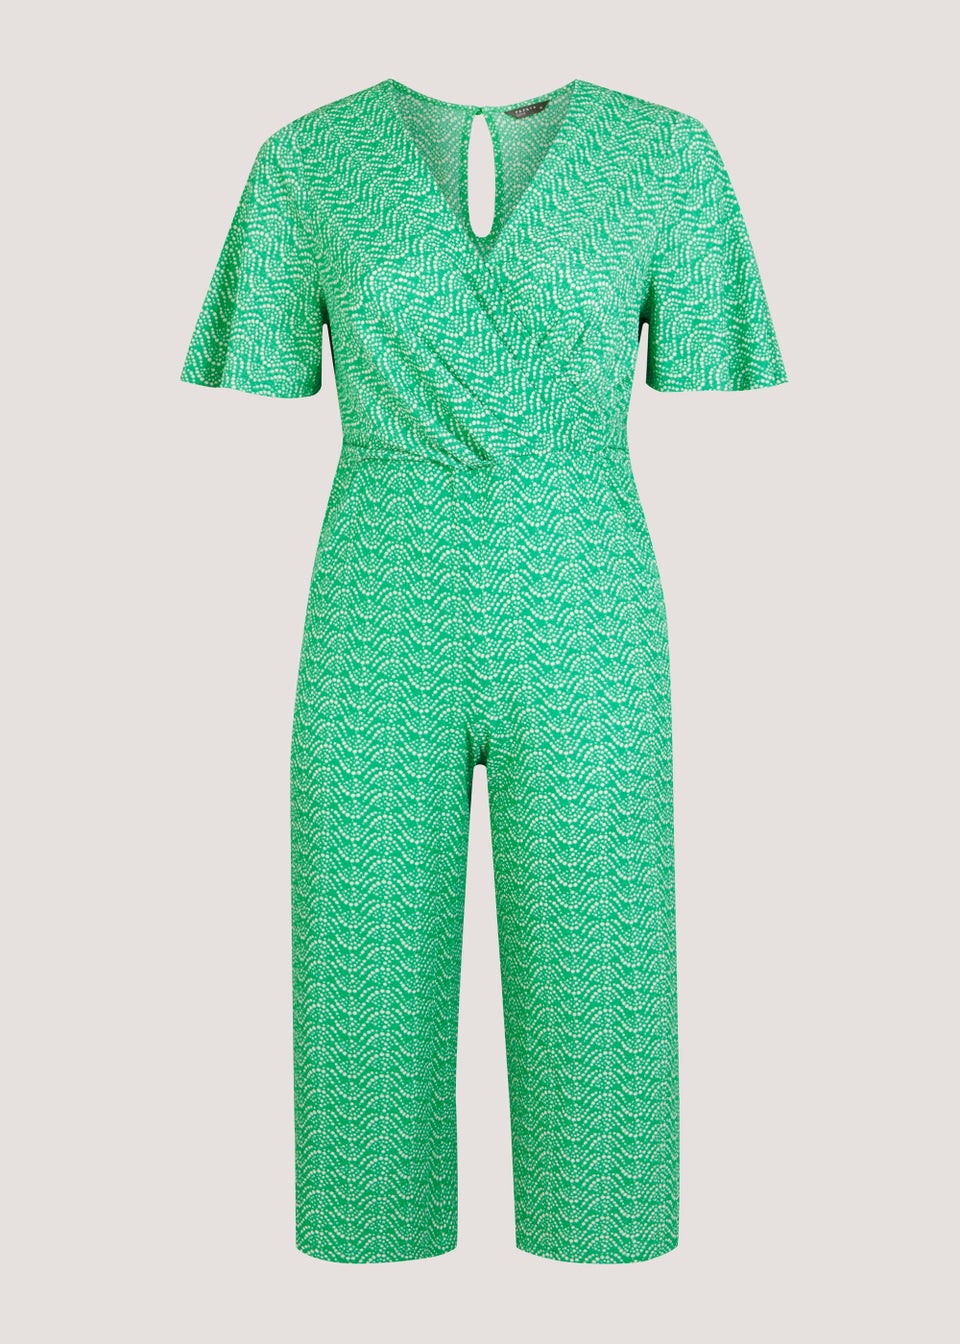 Papaya Curve Green Print Jumpsuit - Matalan